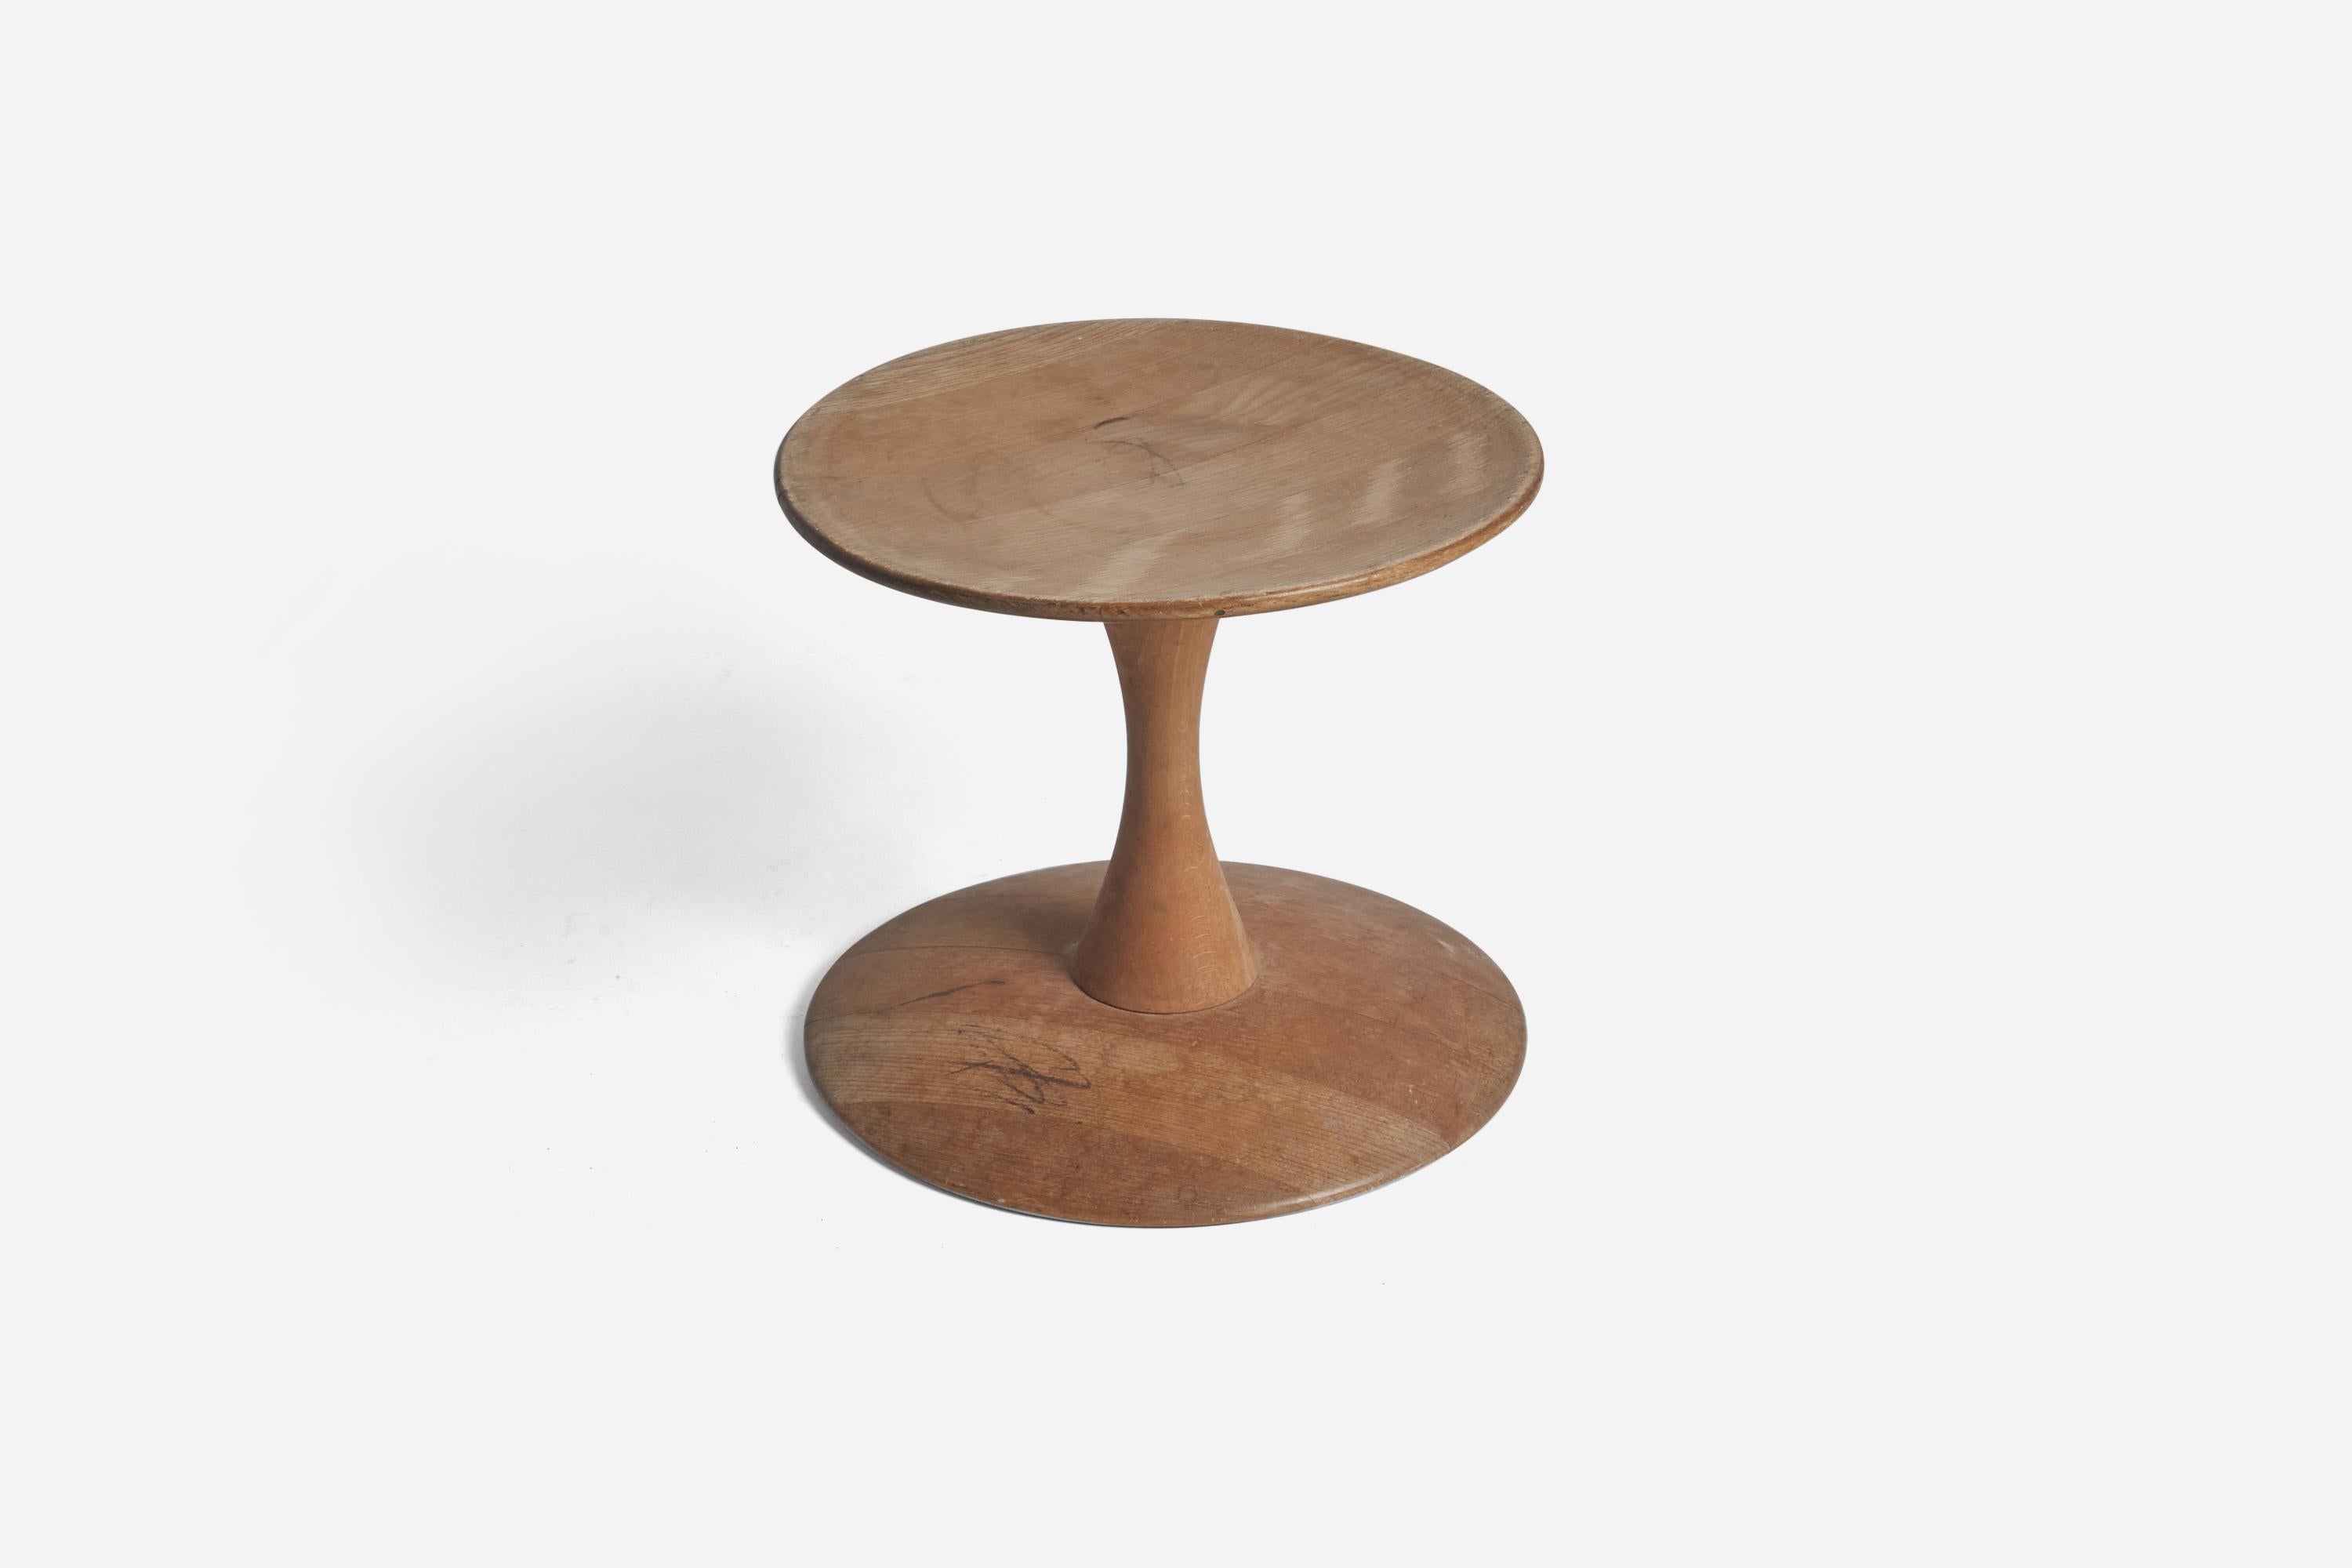 A beech stool designed by Nanna Ditzel and produced by Kolds Savværk, Denmark, 1962. 